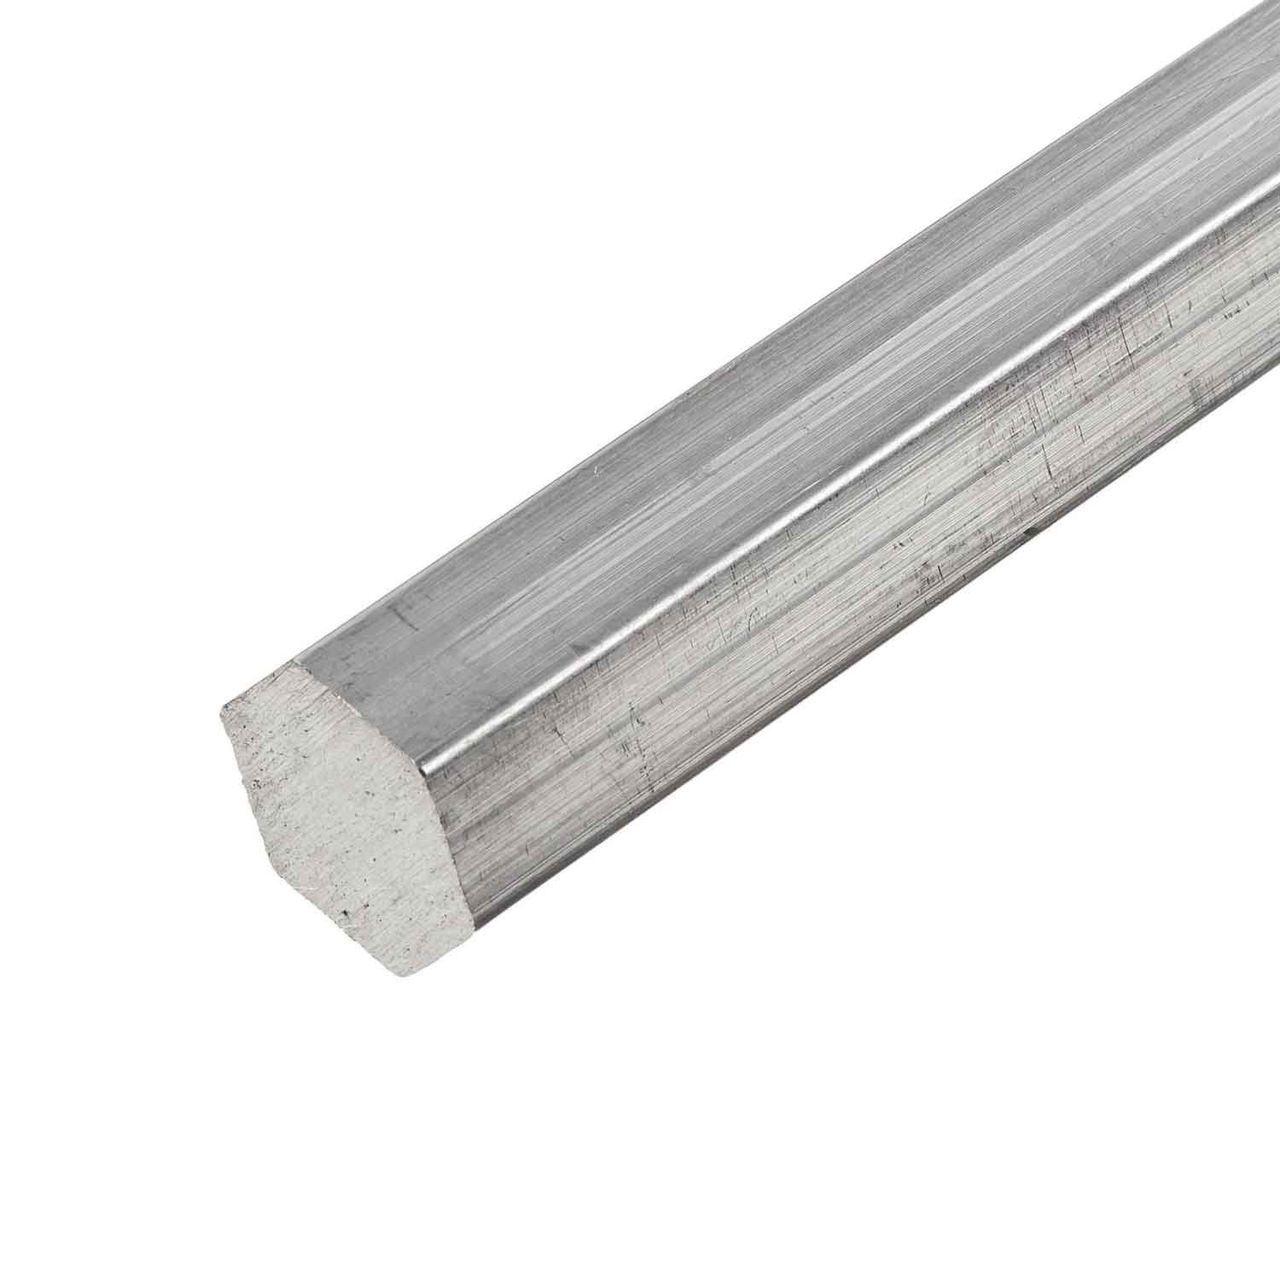 Details about   6061 Aluminum Hex Rod 2.0" Hex x 6 Ft Length 